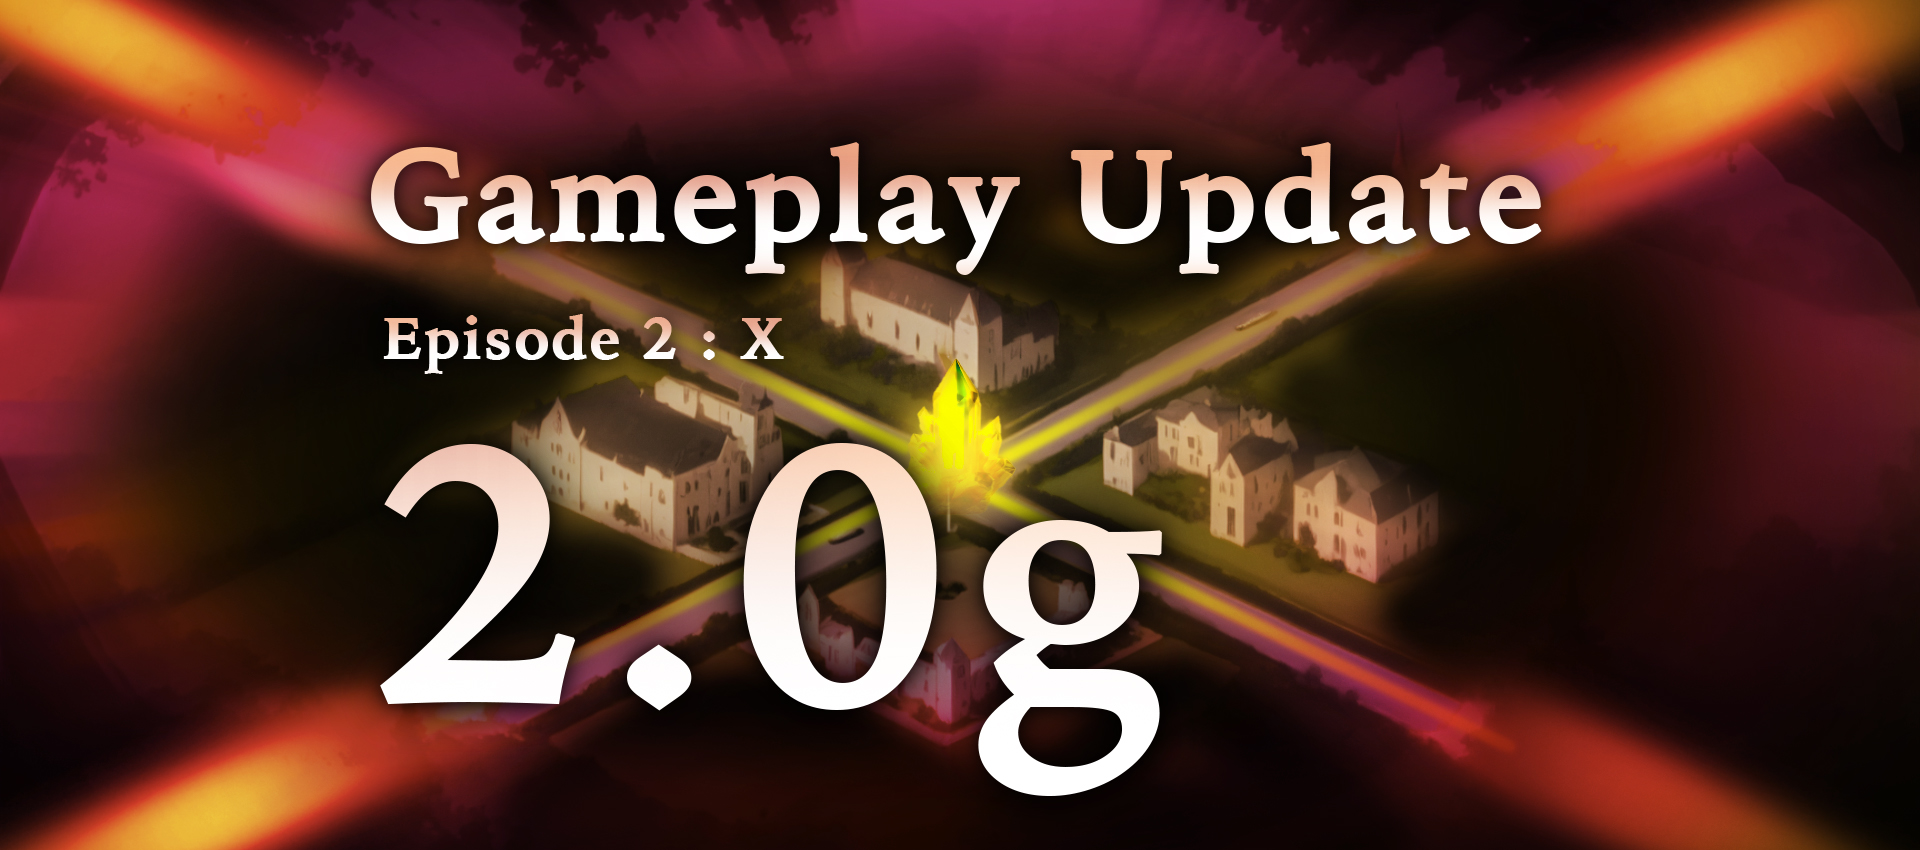 Gameplay Update 2.0g : X